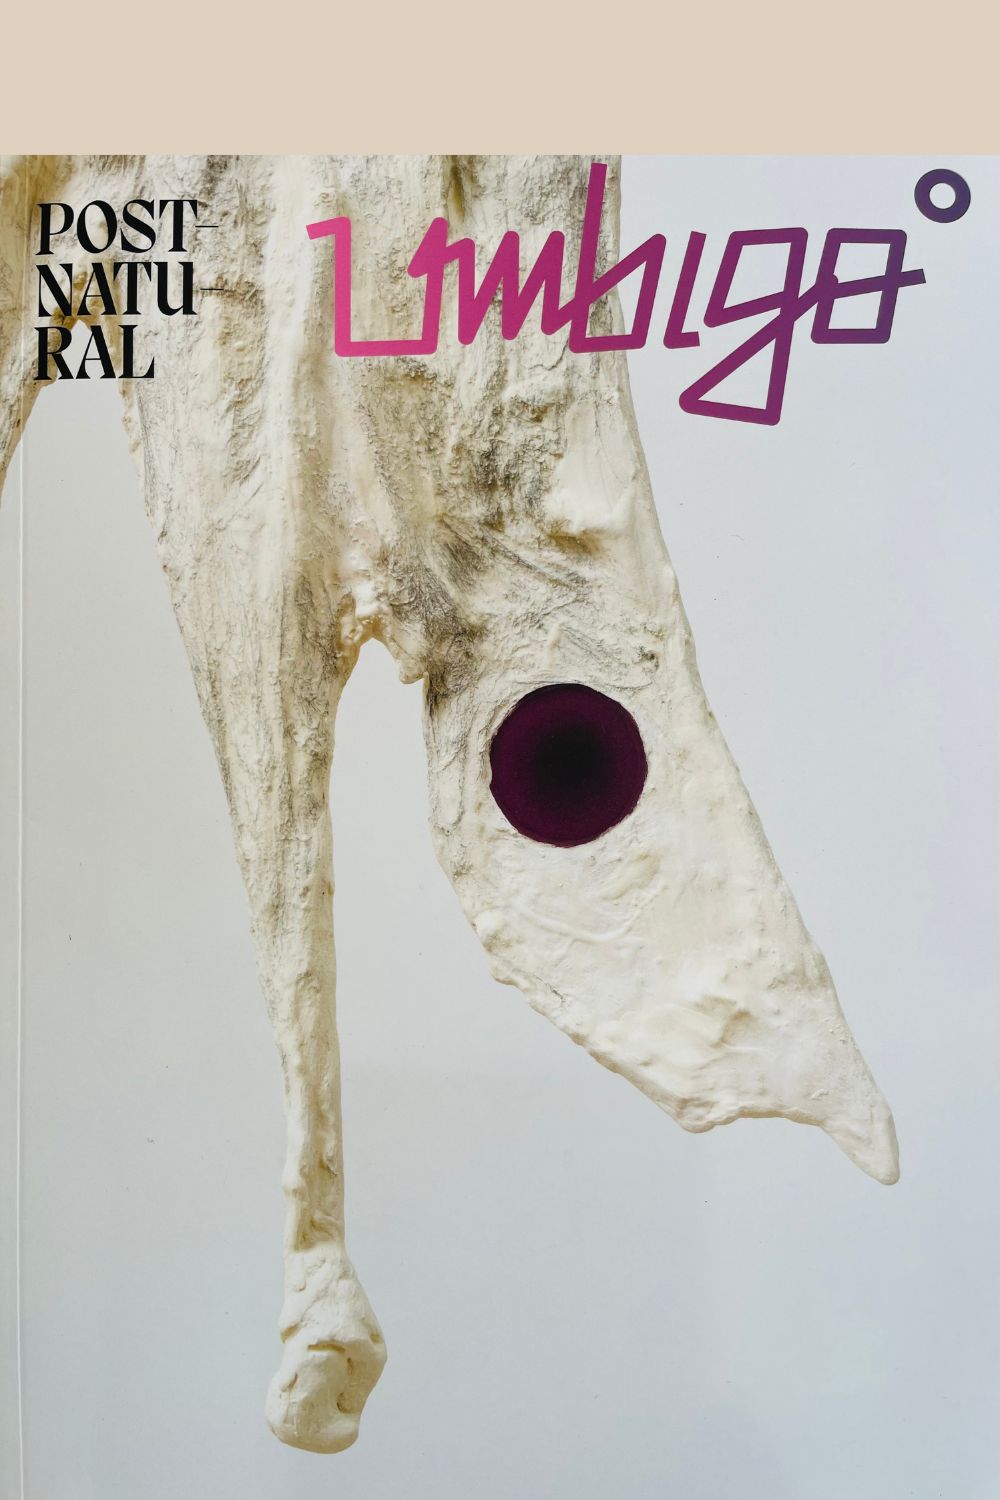 Umbigo Magazine cover Issue 87 